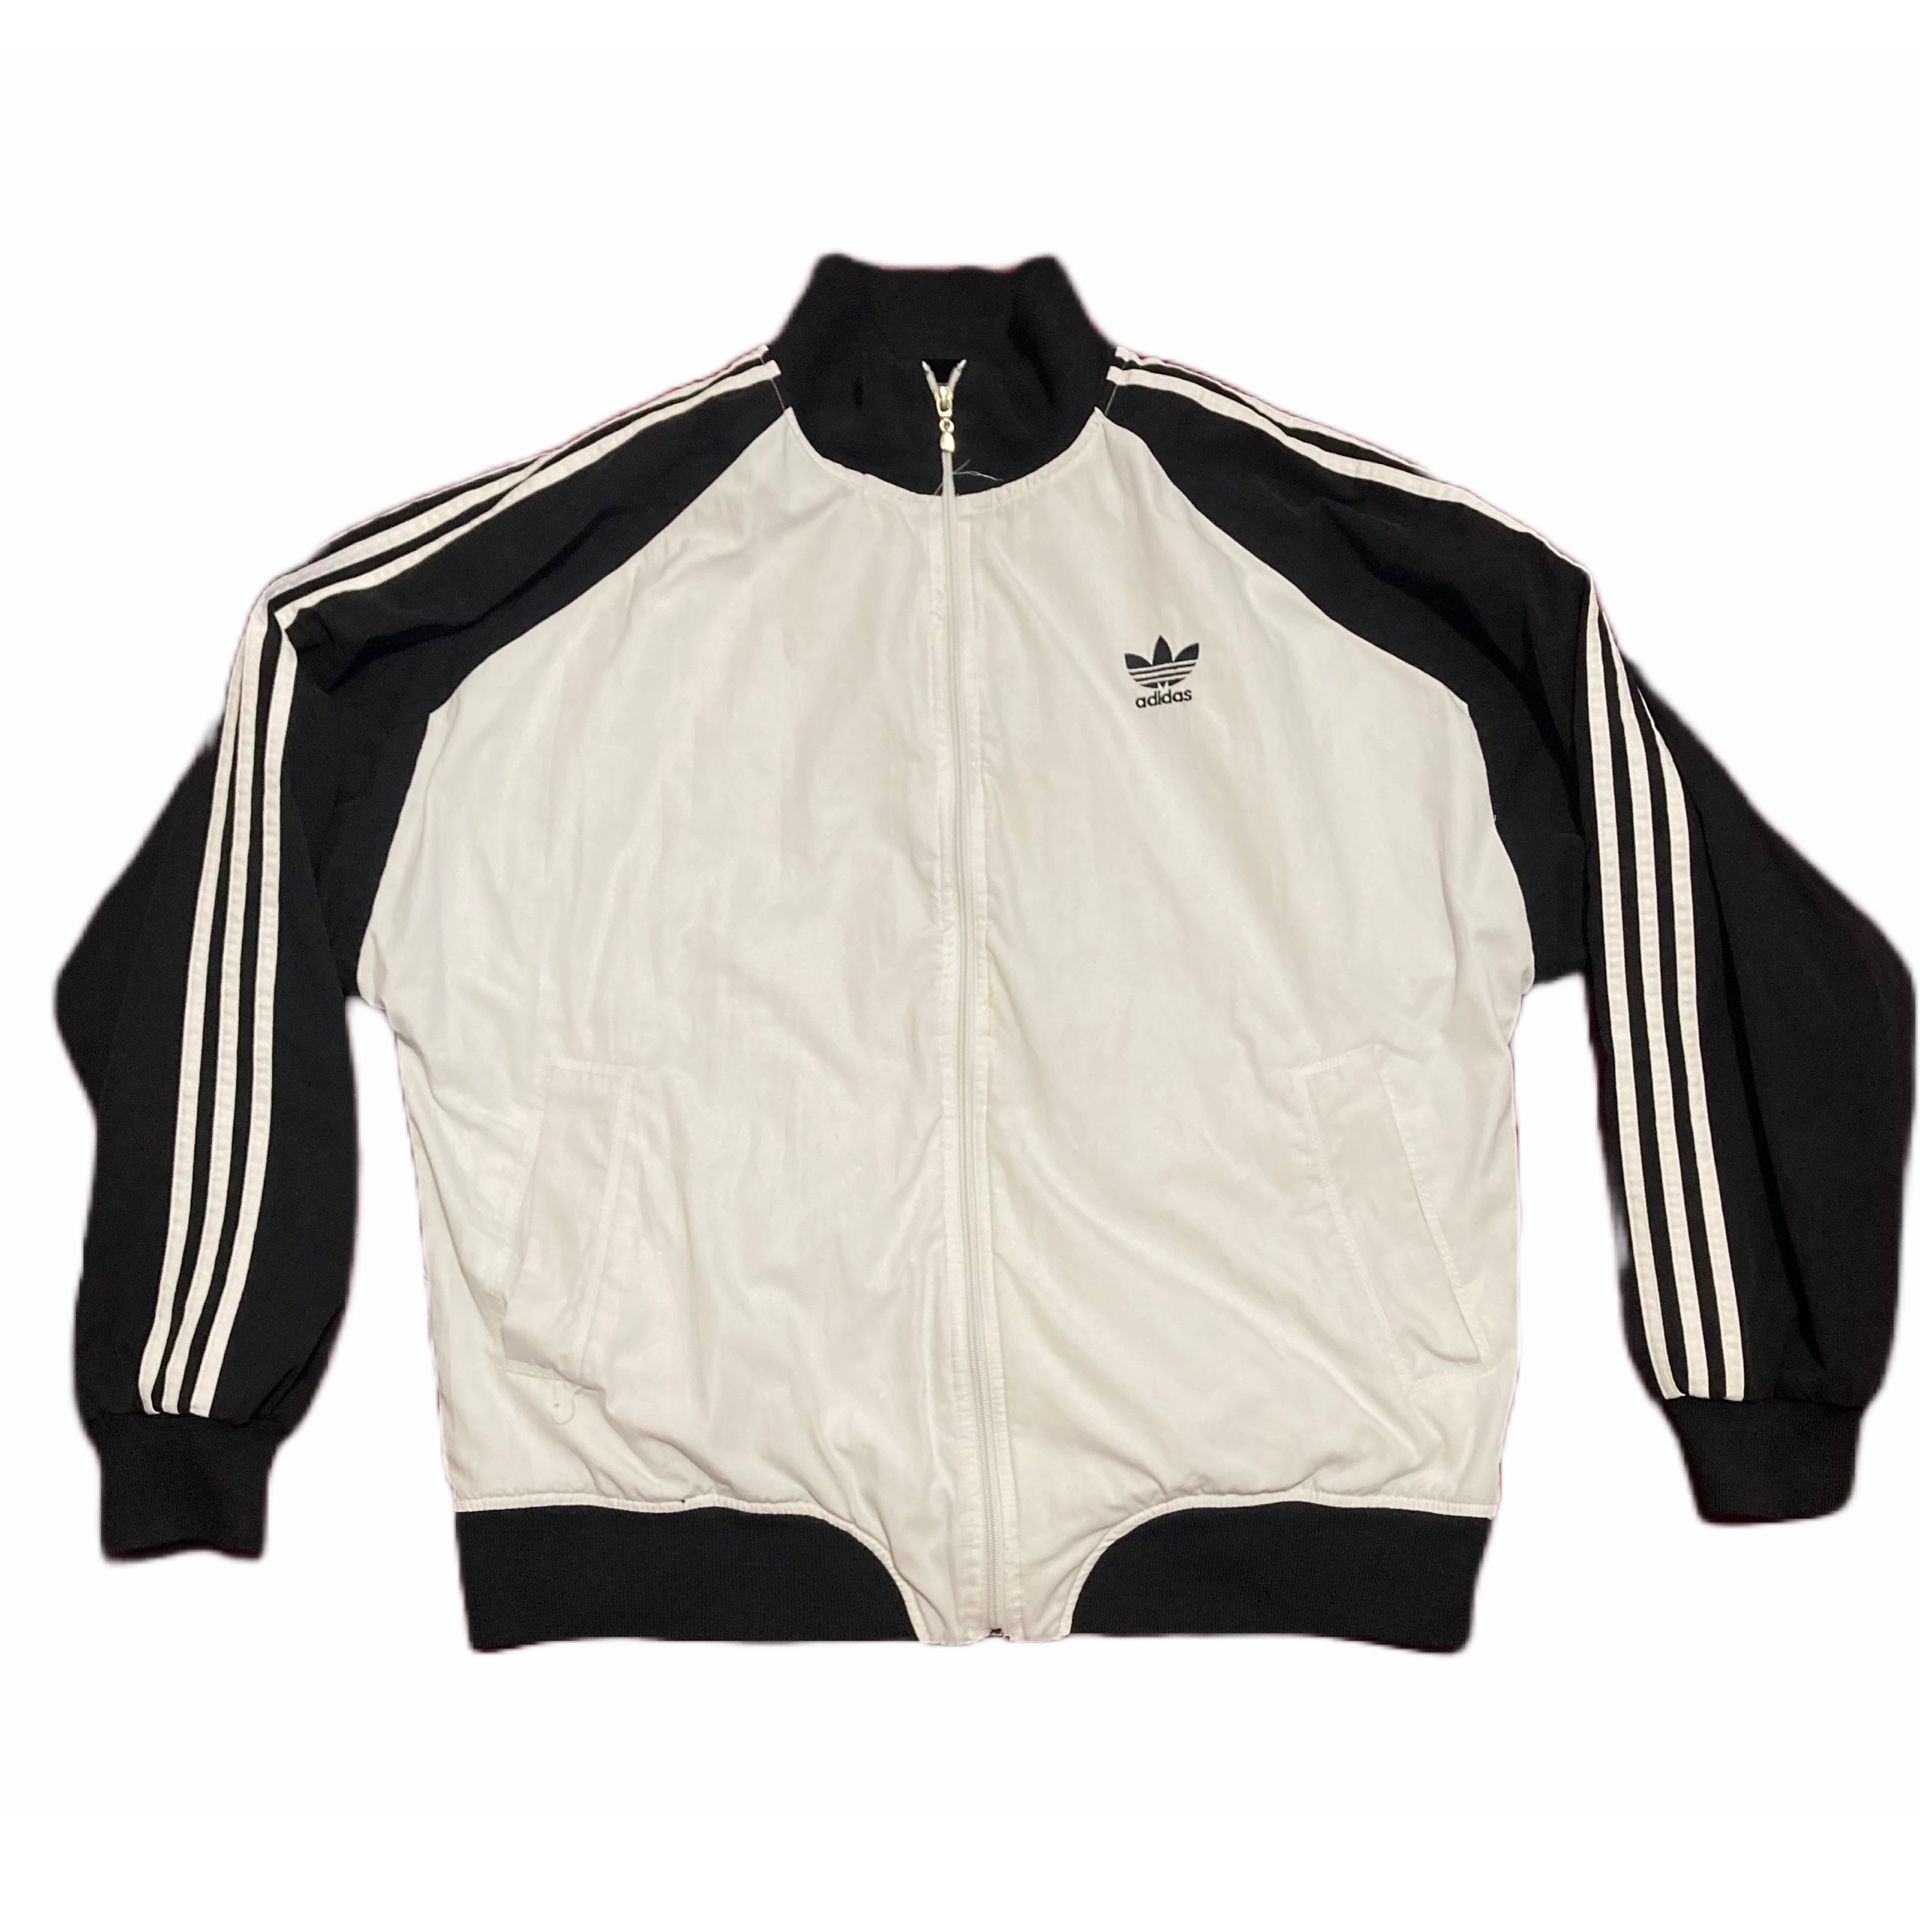 Rancio Contradecir Democracia Vintage ADIDAS Originals ATP Mens L Old School Track Jacket 90s Full Zip  White for Sale in Sunnyside, WA - OfferUp